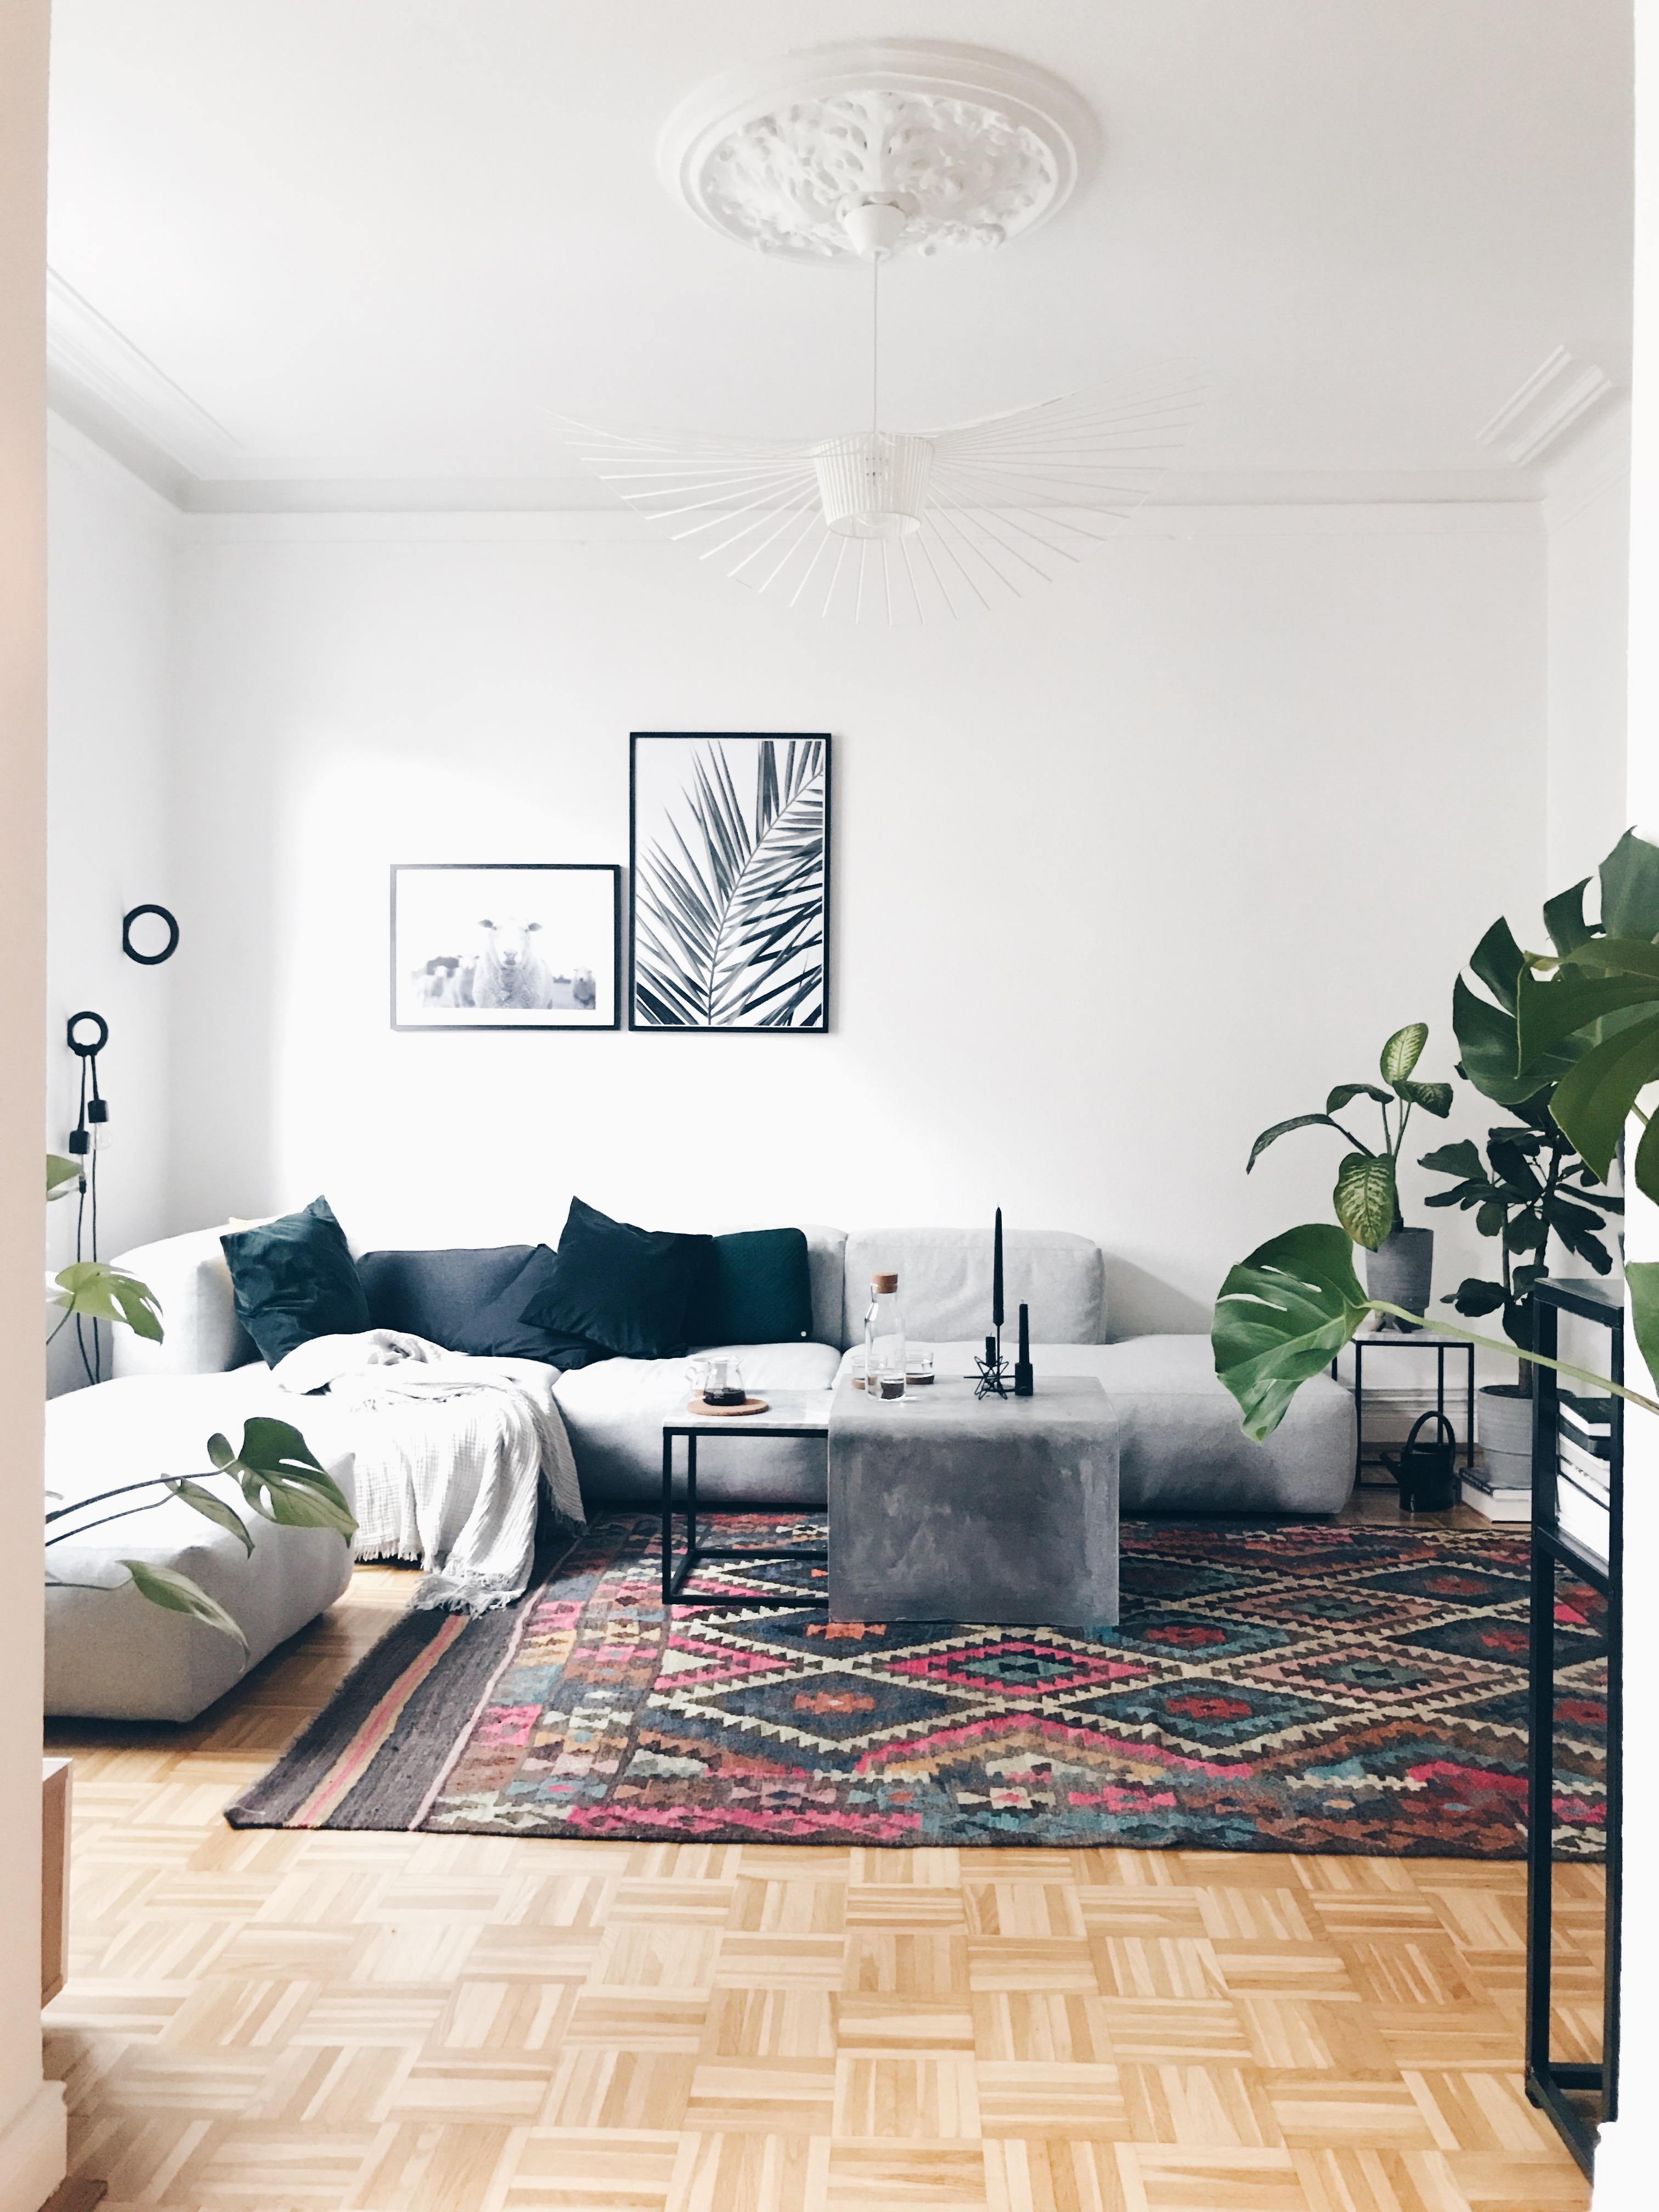 #happyweekend #lazyday #altbau #scandinaviandesign #scandinavianhome #haydesign #livingroom